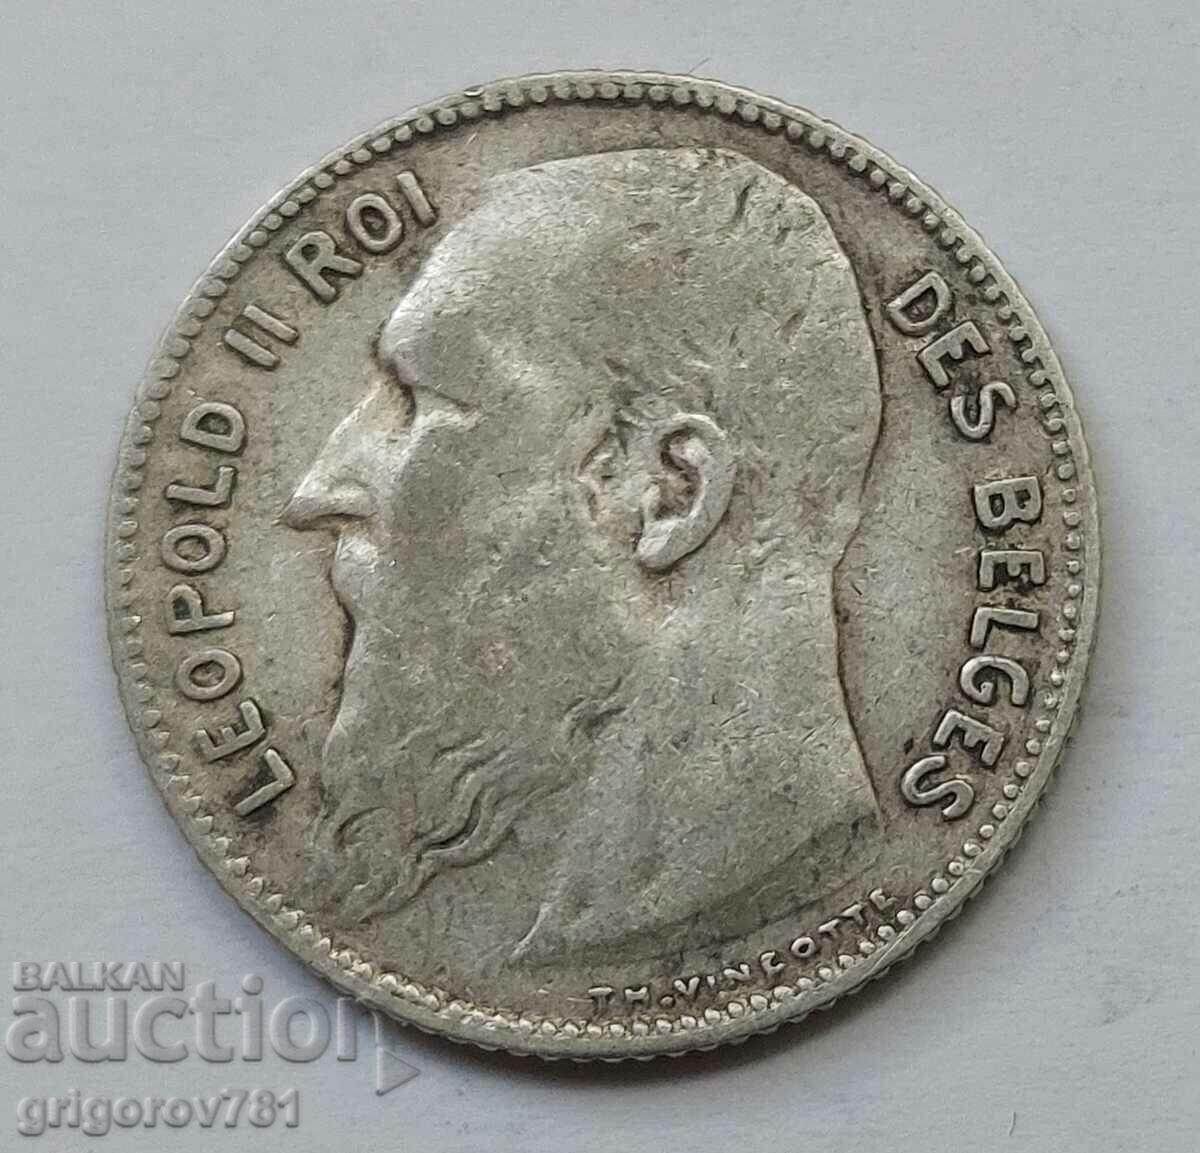 Ασημένιο 1 φράγκου Βέλγιο 1909 - ασημένιο νόμισμα #68